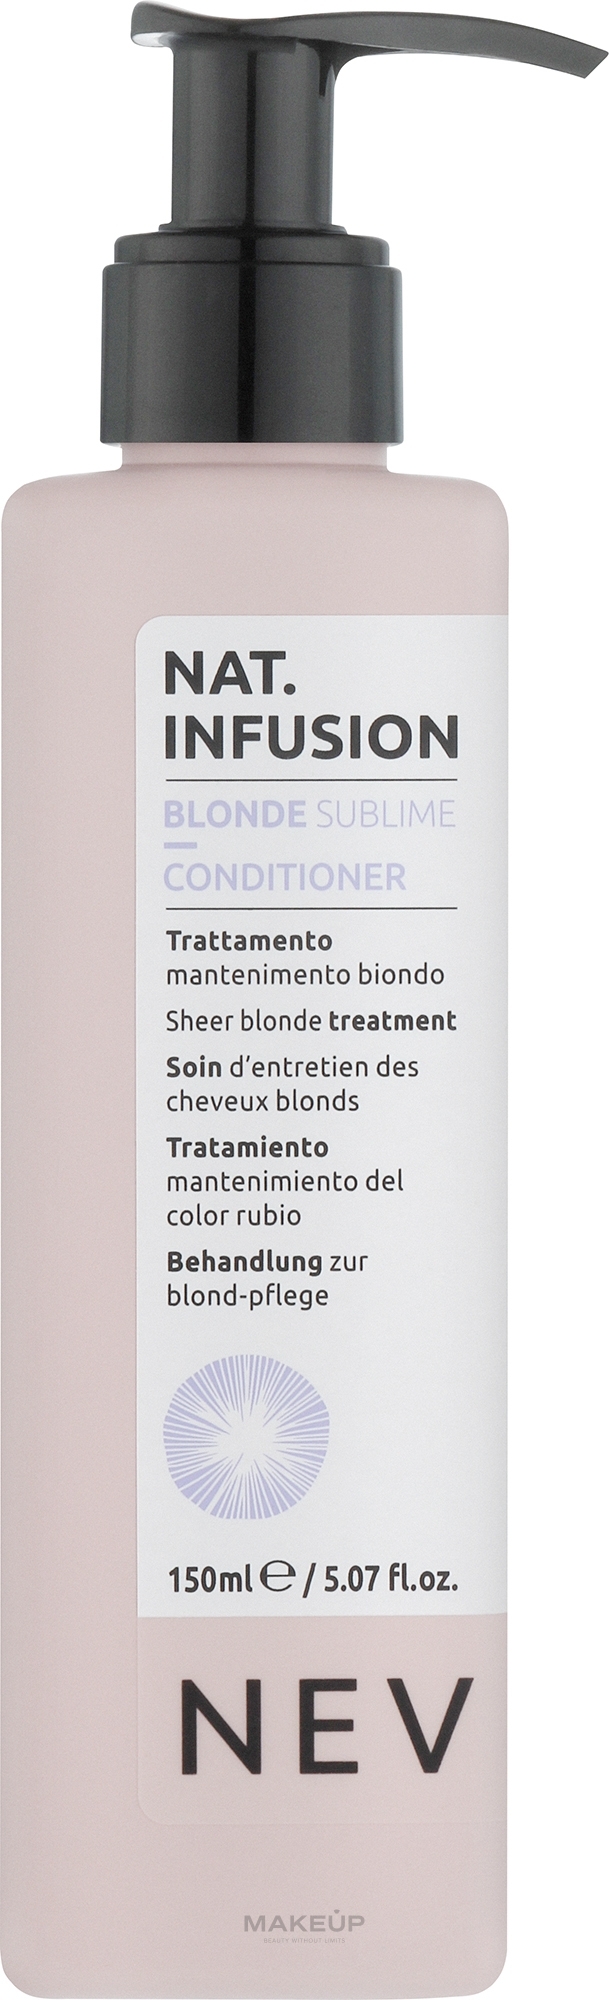 Крем-ополаскиватель для нейтрализации желтых оттенков на волосах - Nevitaly Sheer Blonde Treatment — фото 150ml